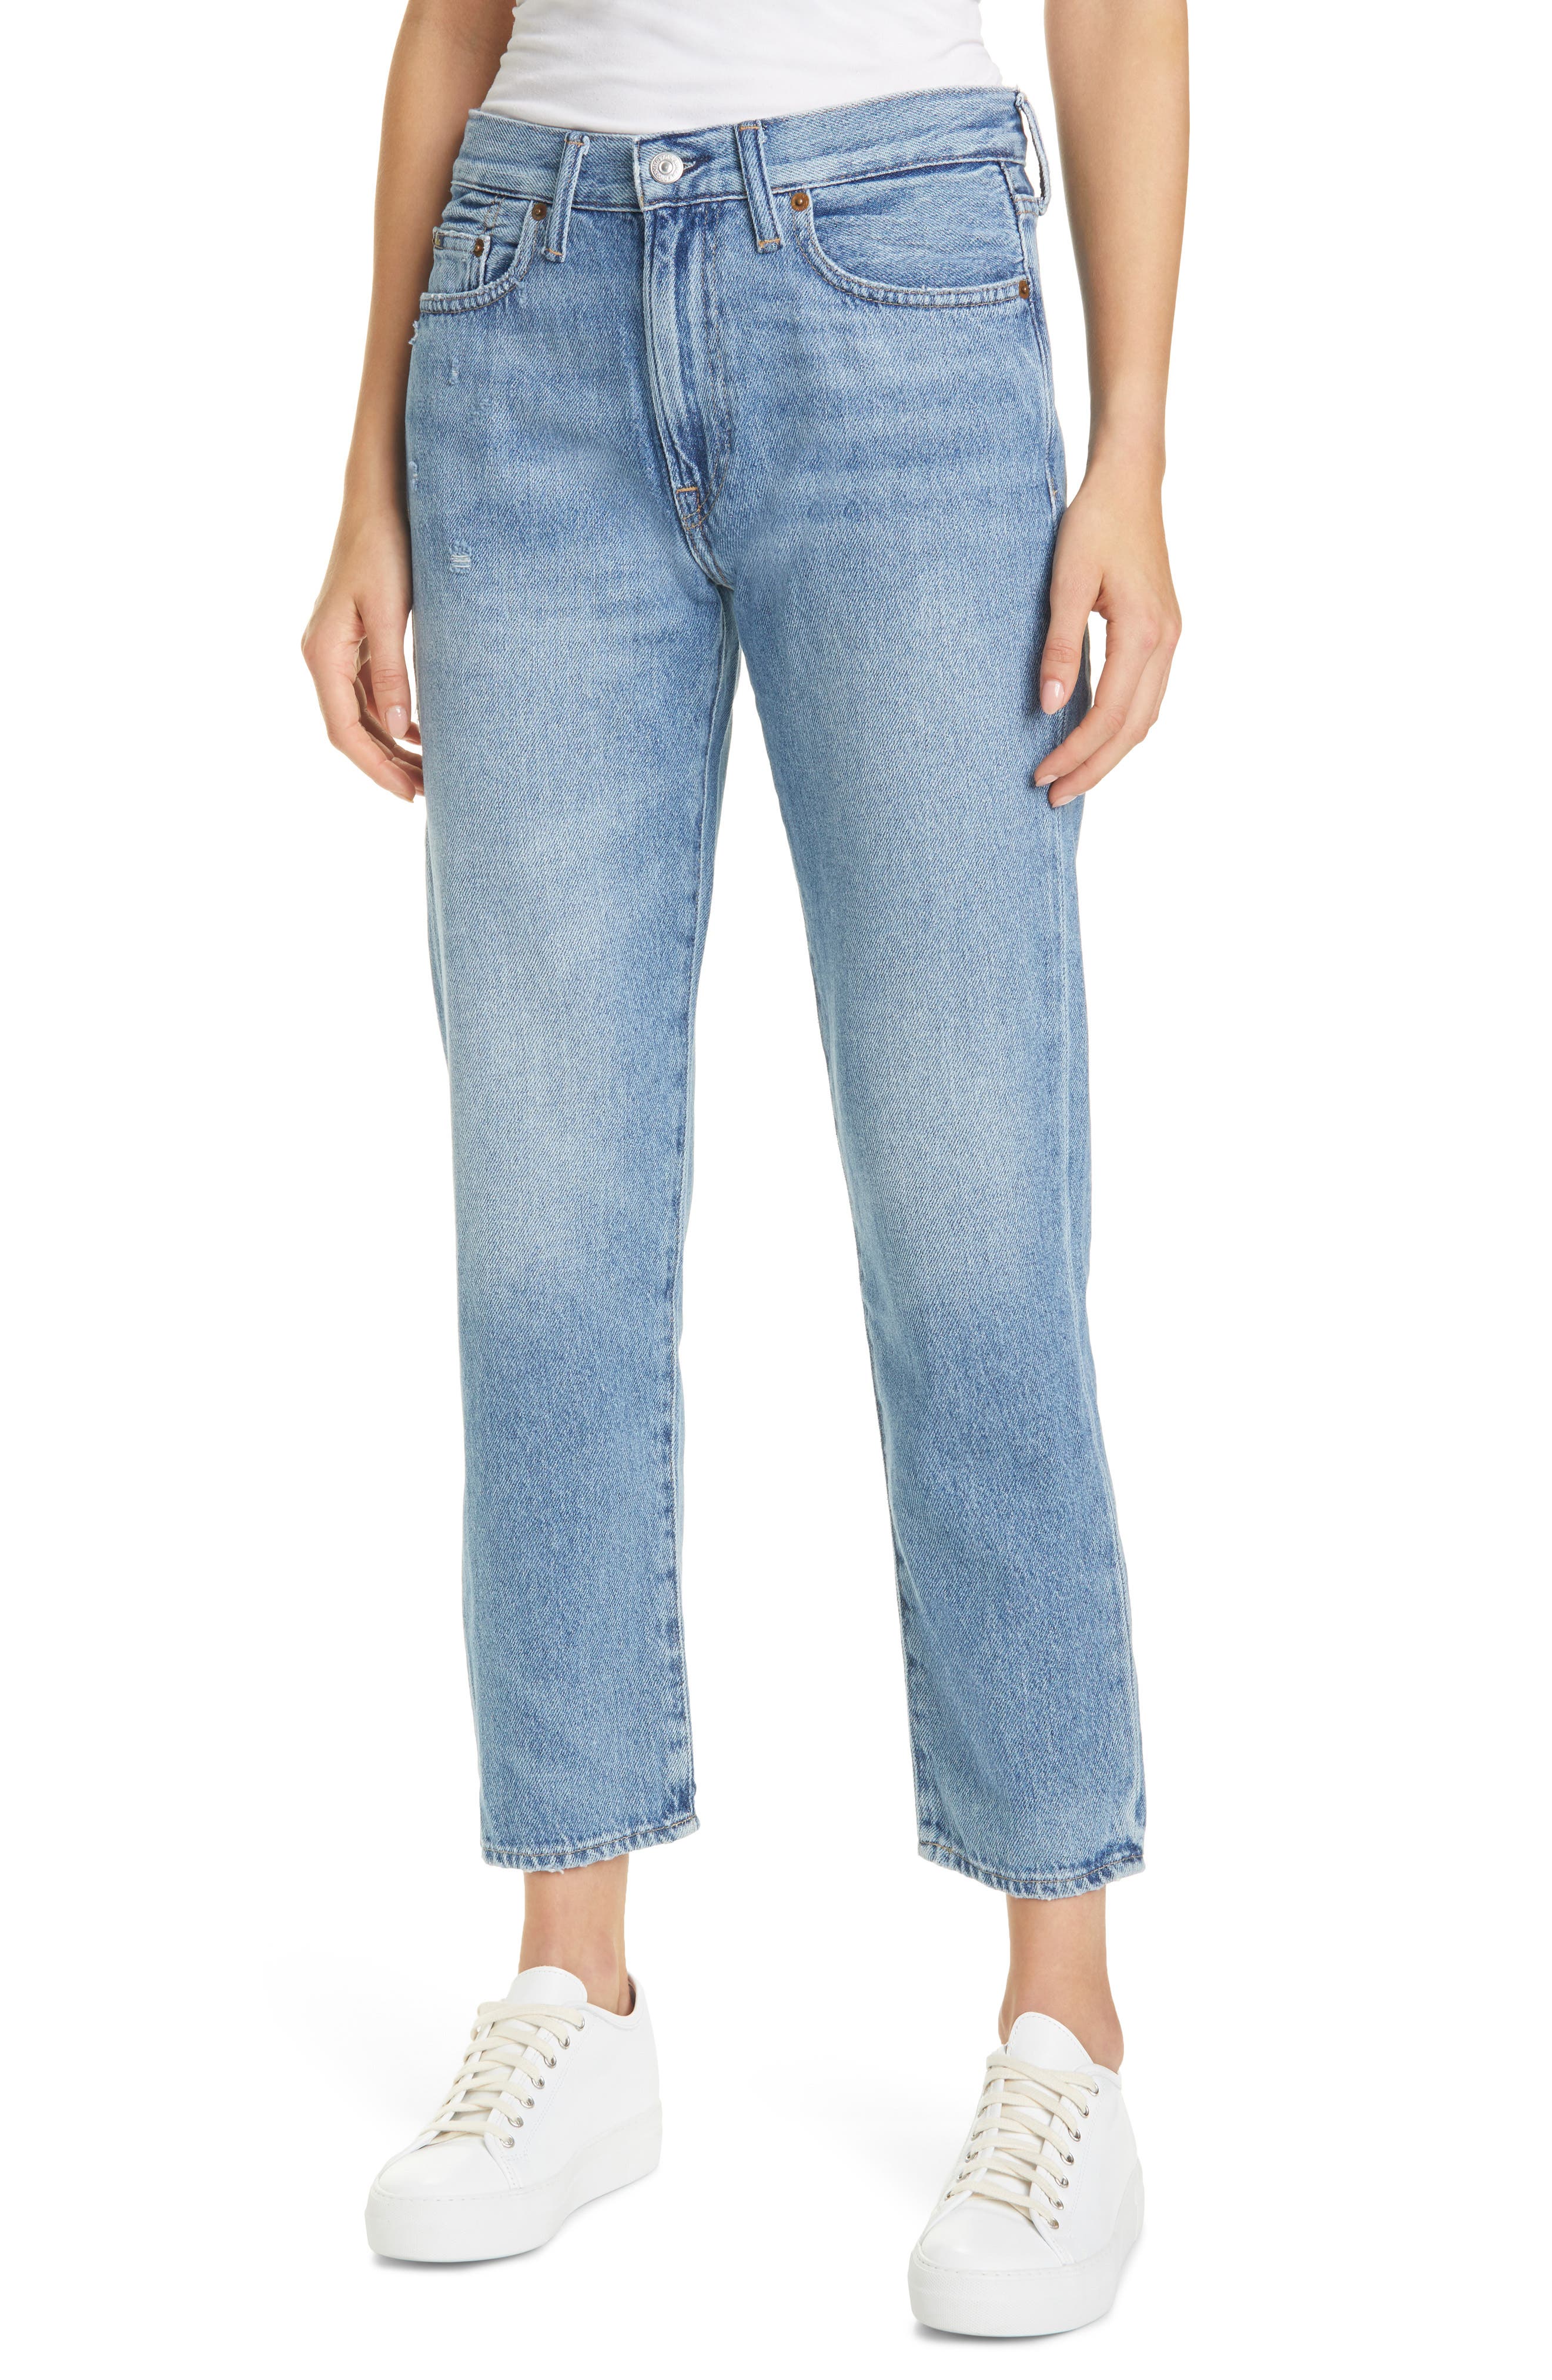 ralph lauren jeans price